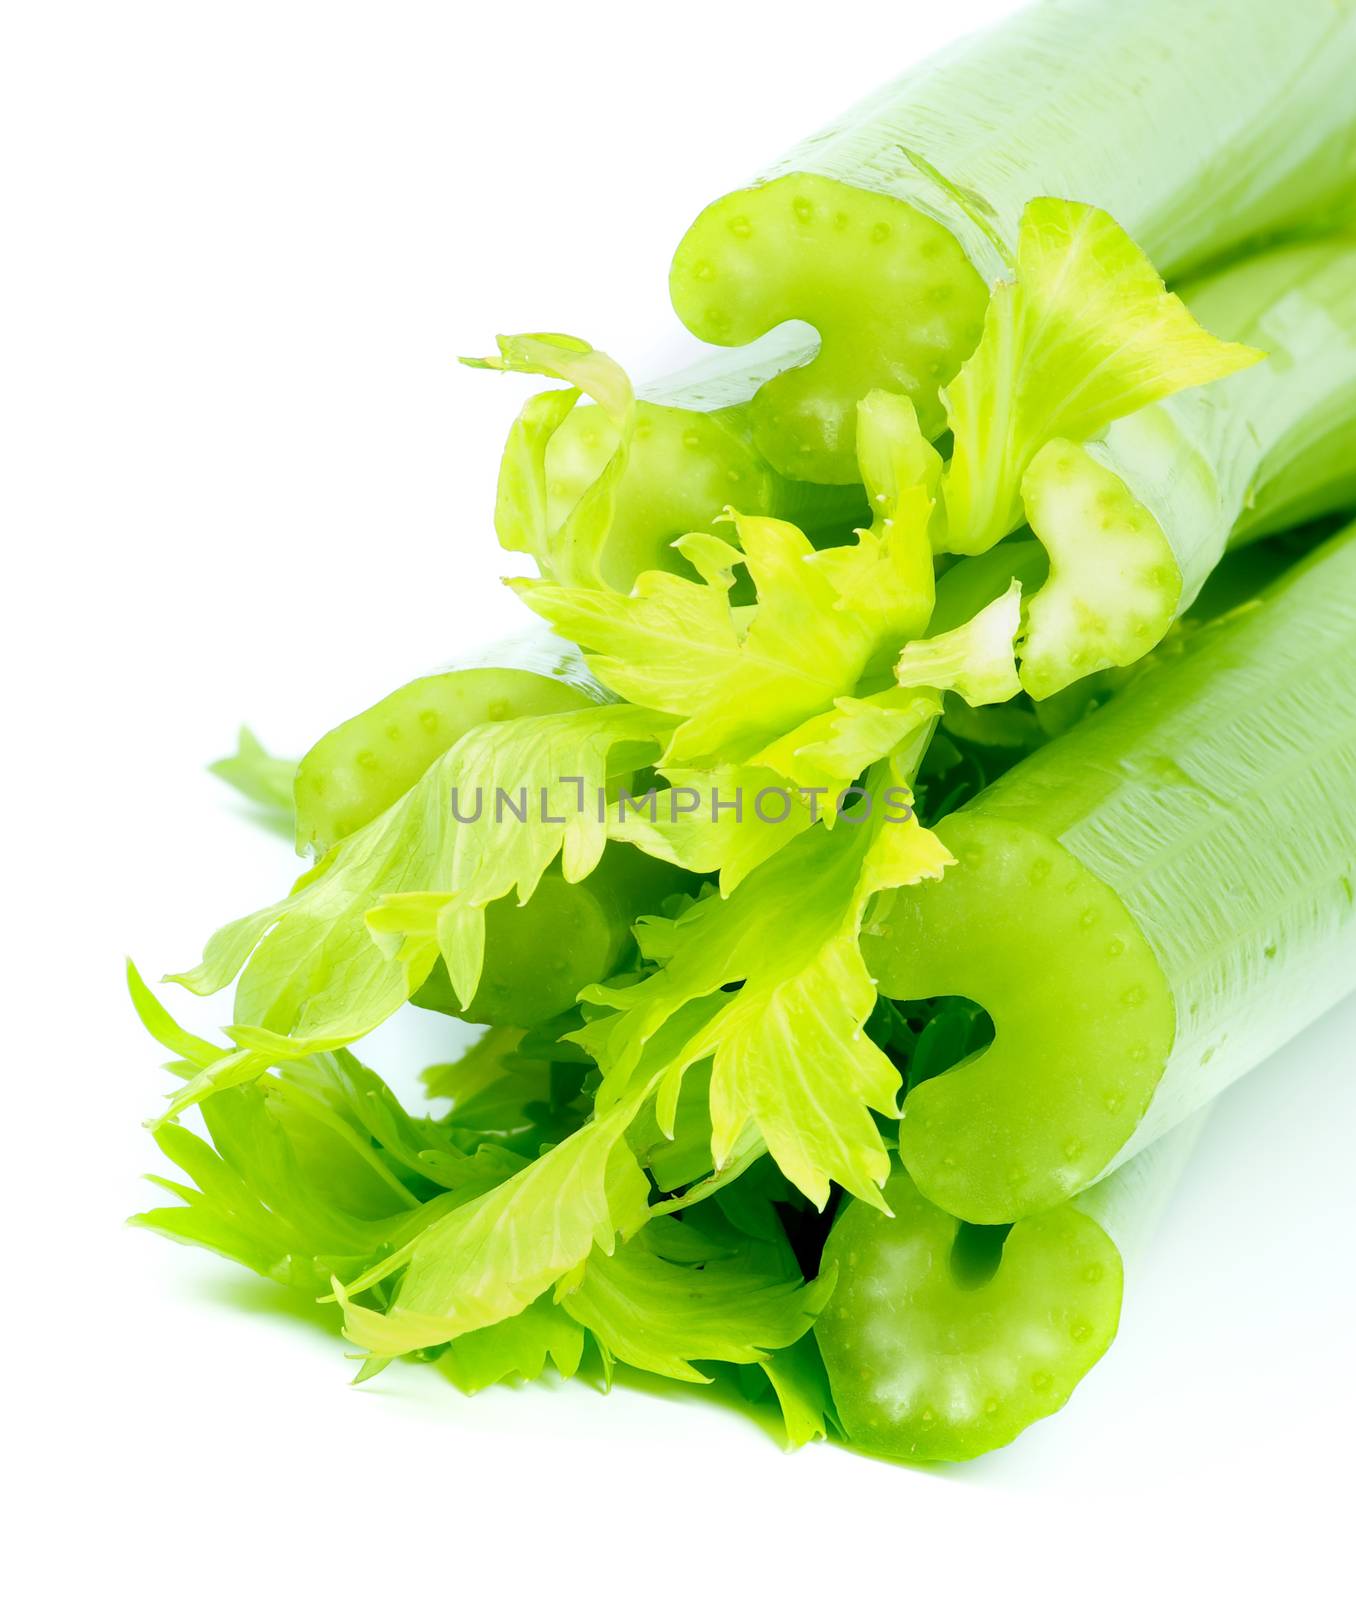 Stalks of Raw Celery by zhekos